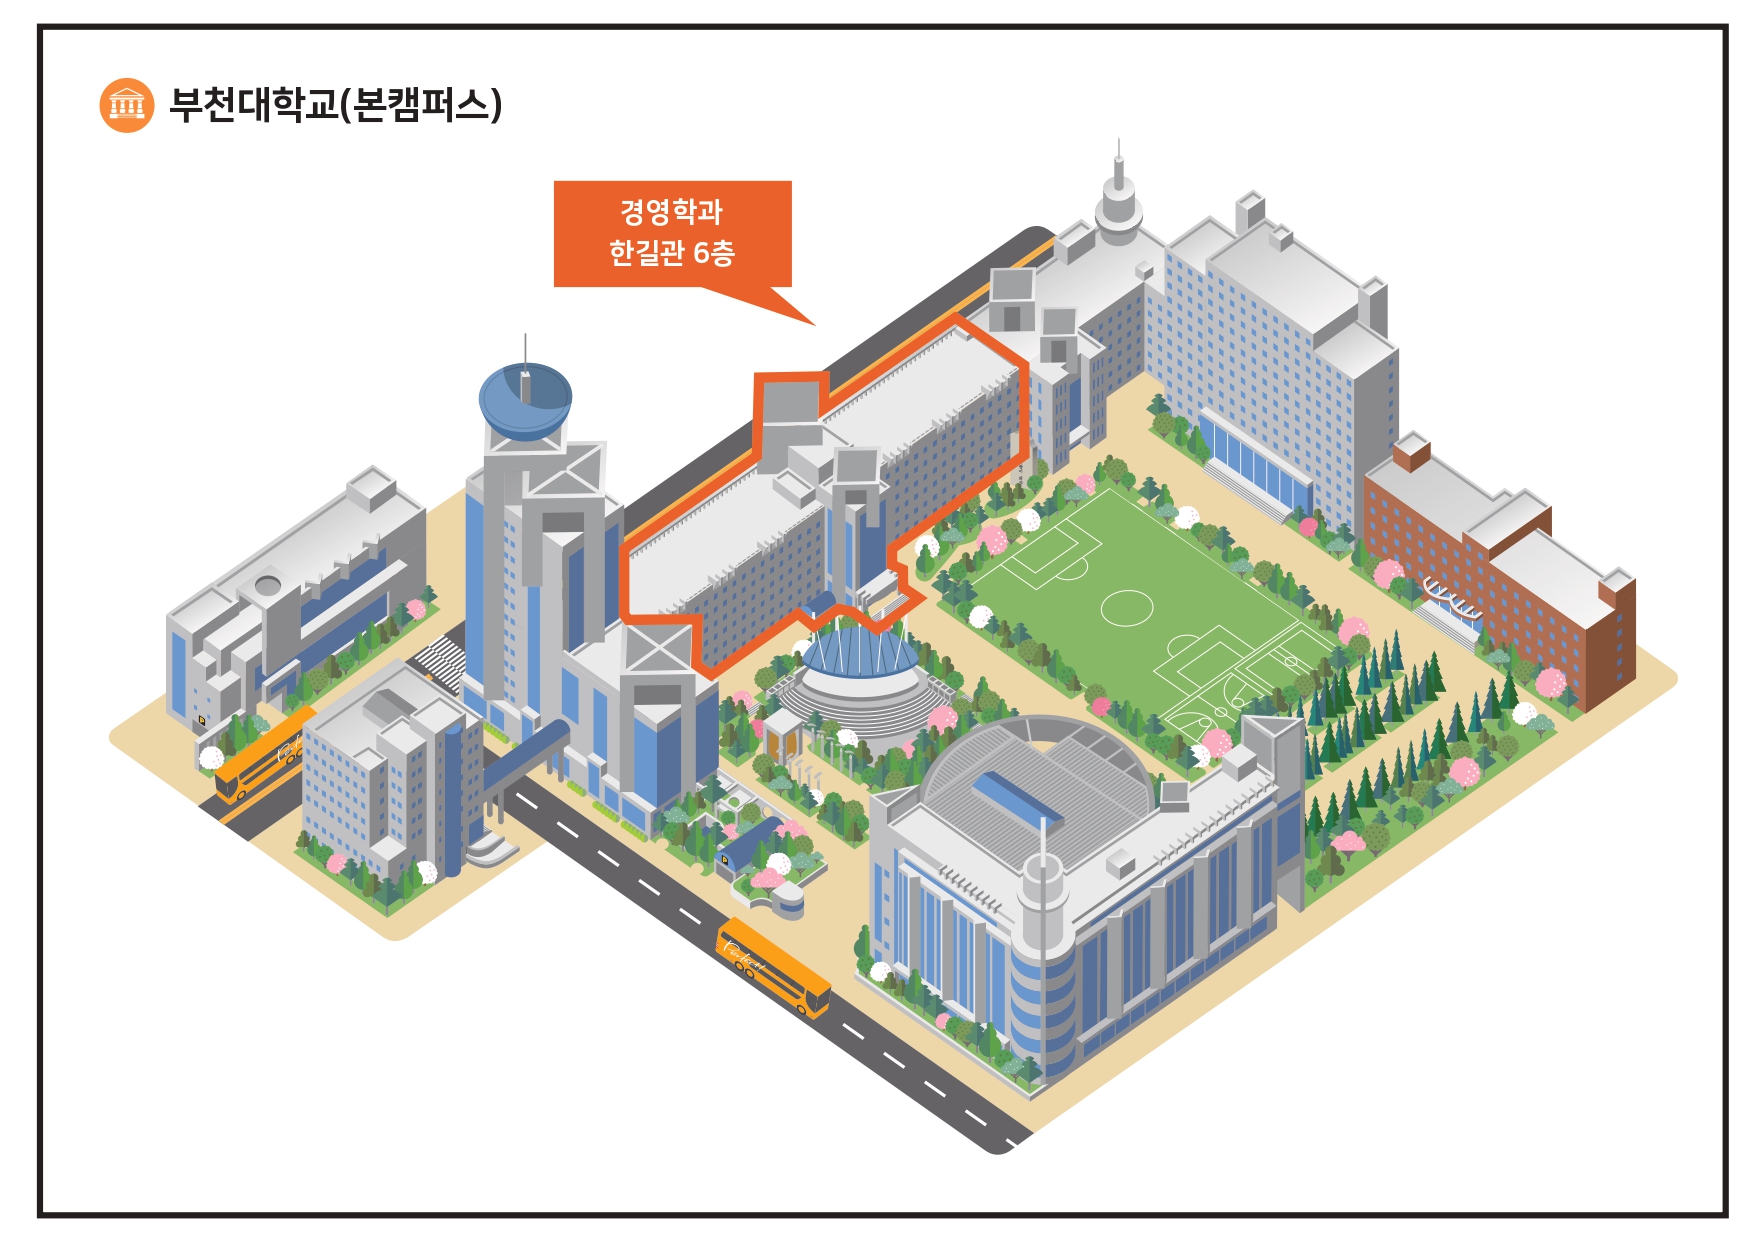 부천대학교(본캠퍼스) 경영과 한길관 6층